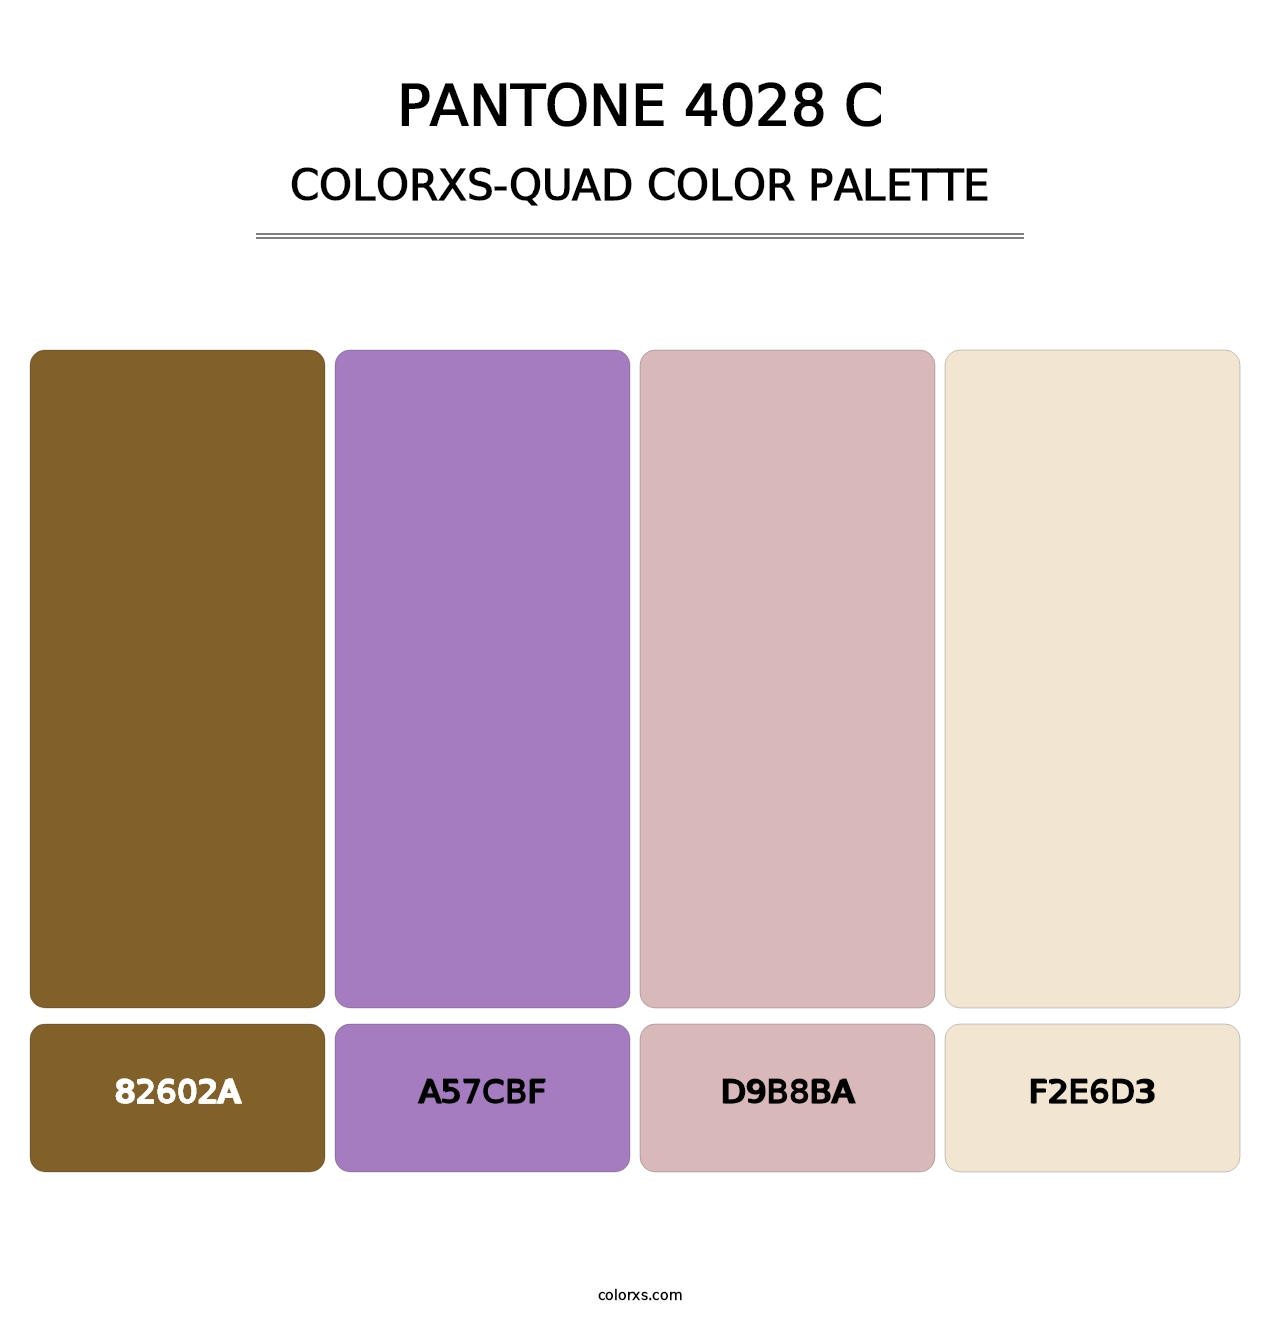 PANTONE 4028 C - Colorxs Quad Palette